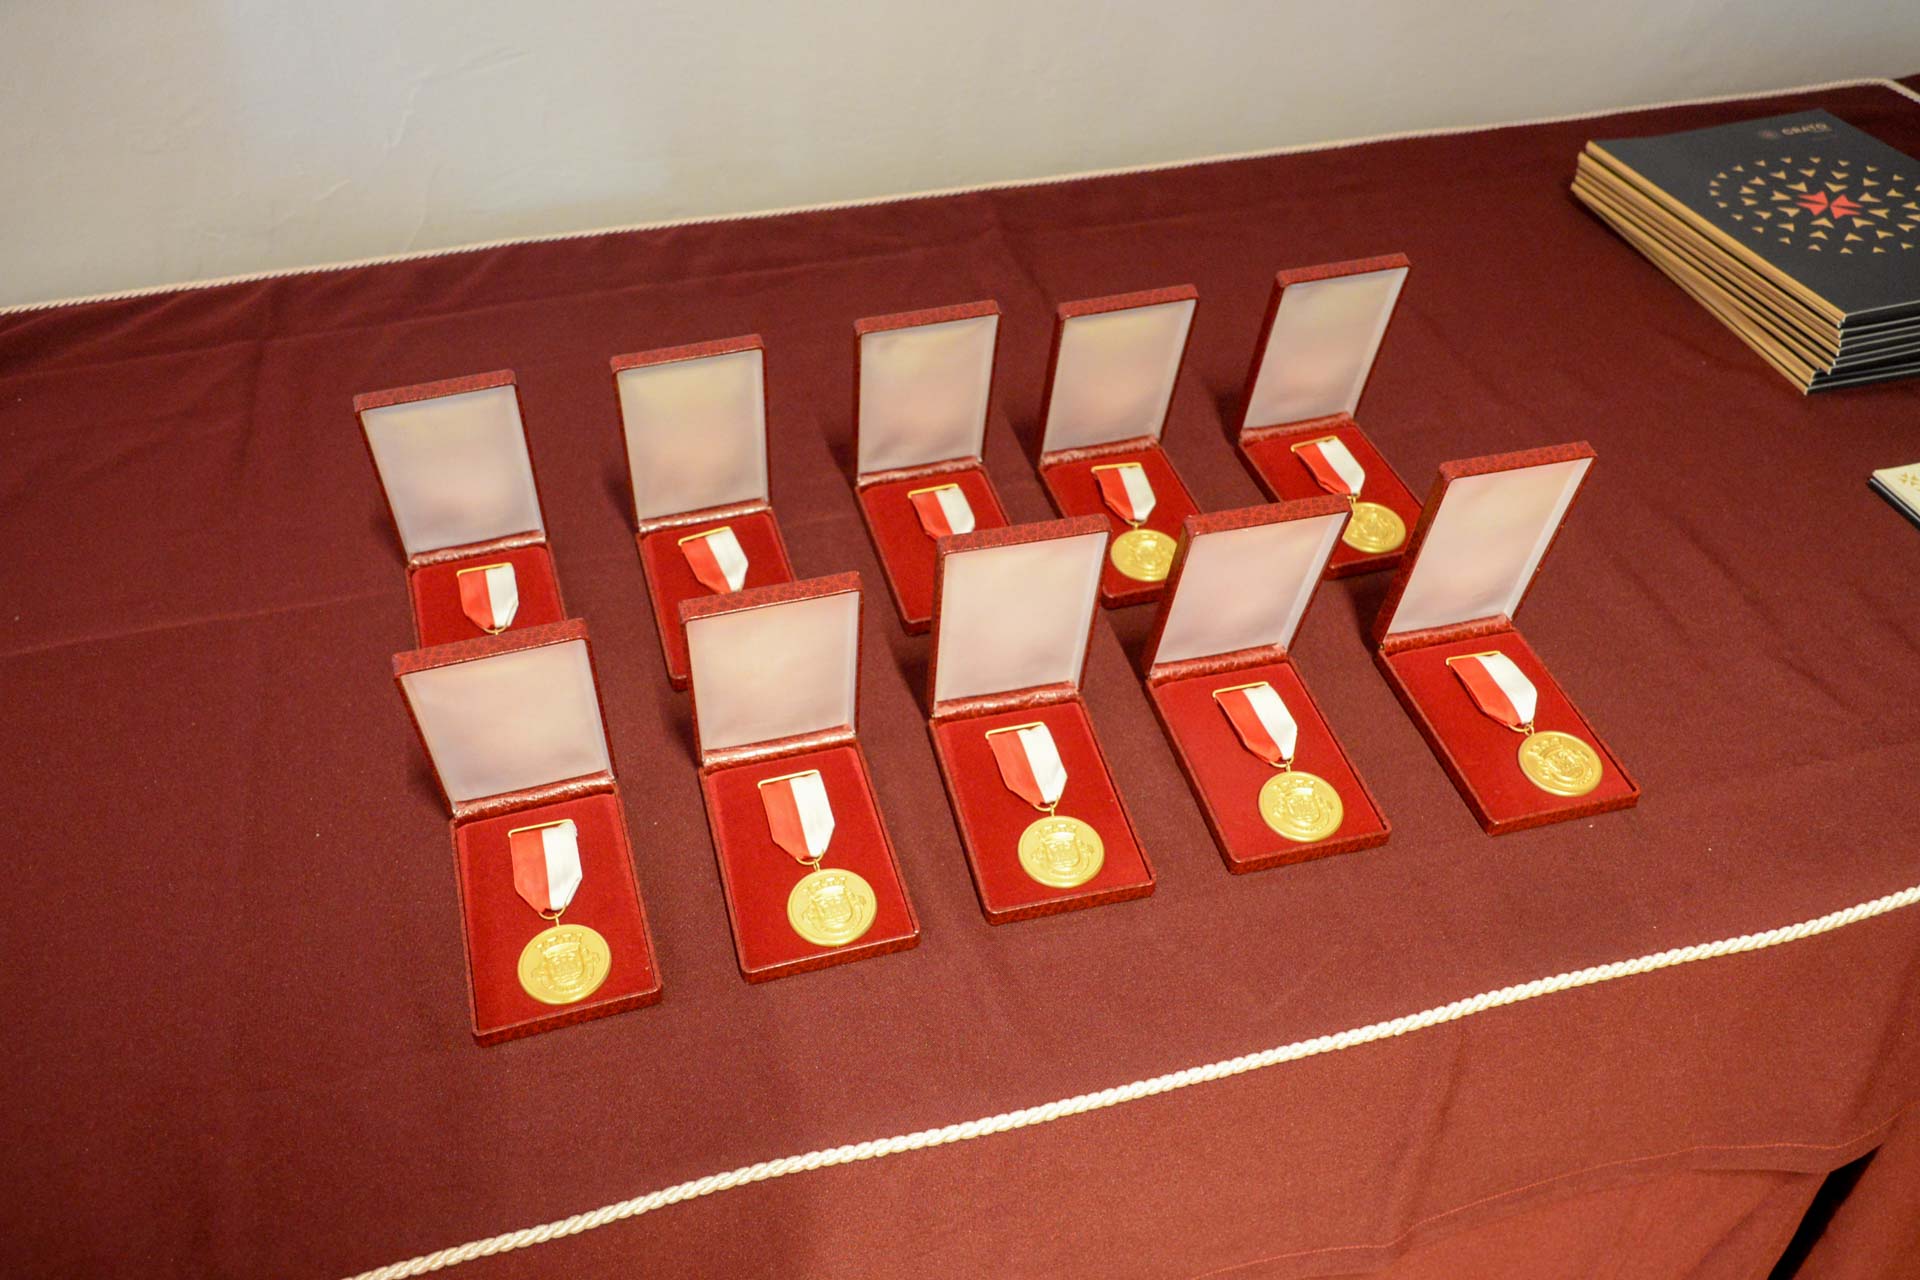 Distinções Honoríficas do Município do Crato – Medalha de Ouro do Município do Crato